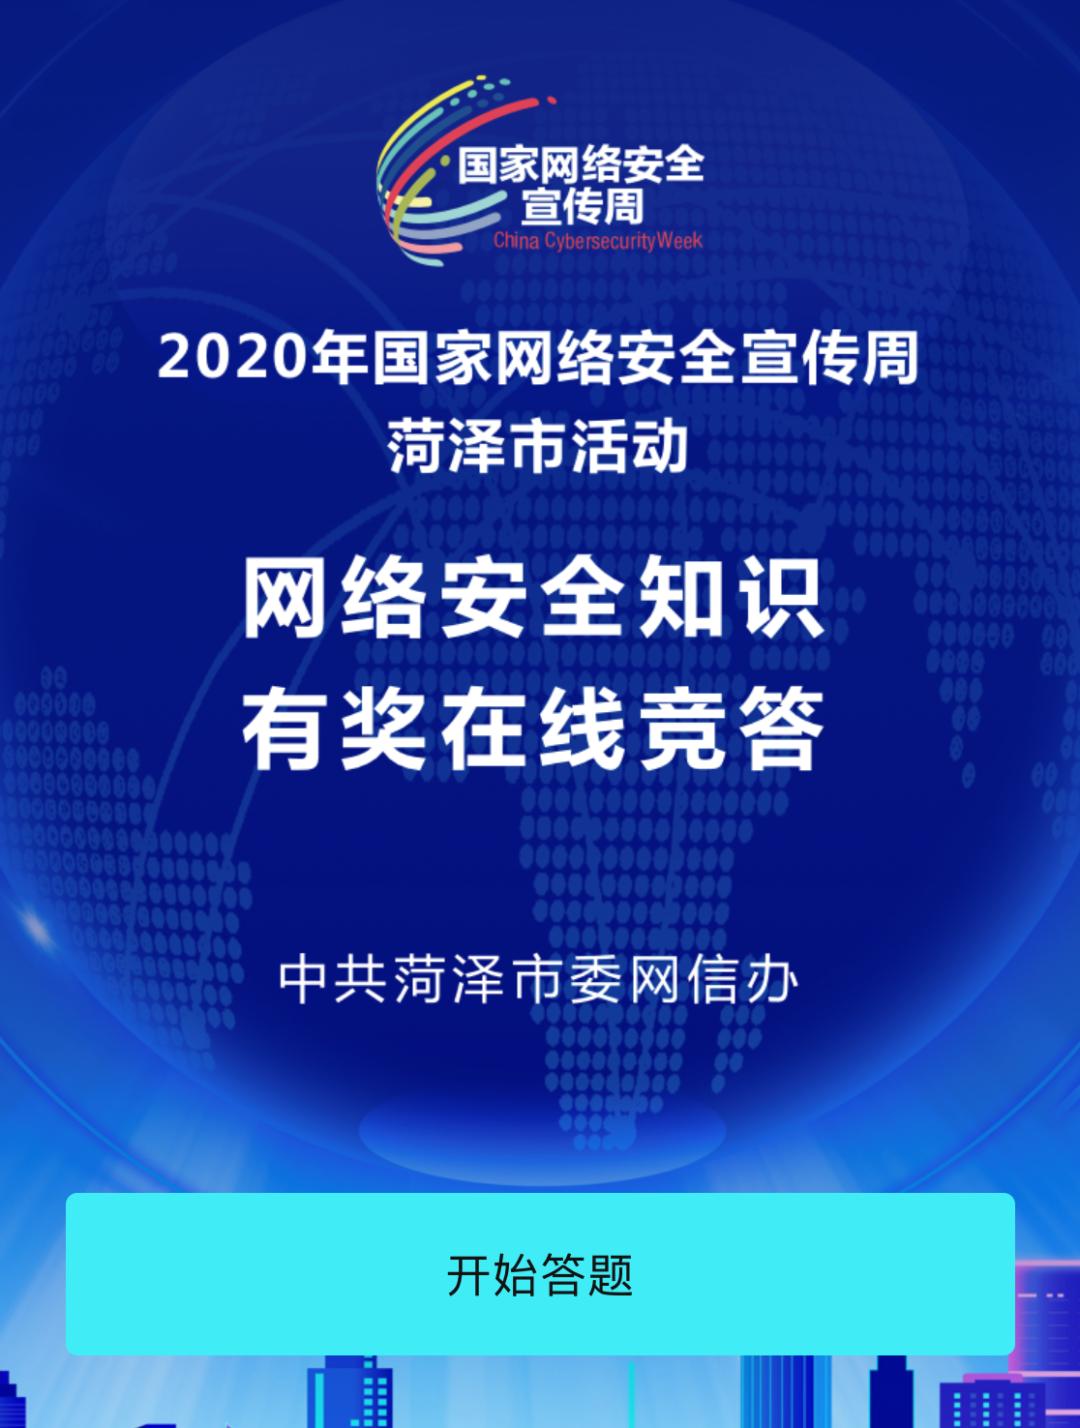 2020年菏泽市网络安全知识有奖在线竞答开始了!